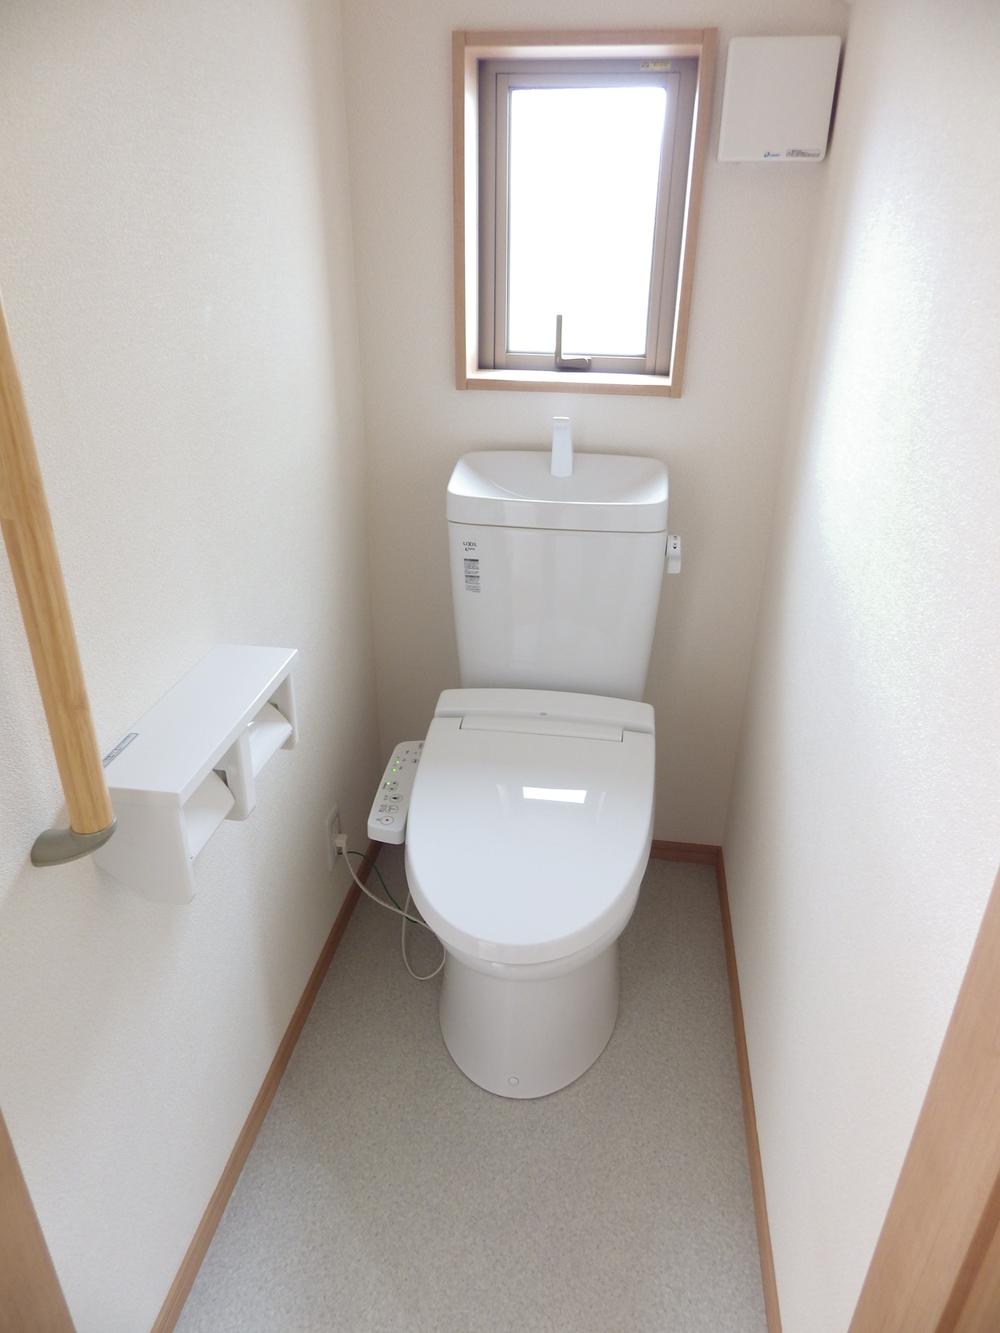 Toilet. Bright toilet